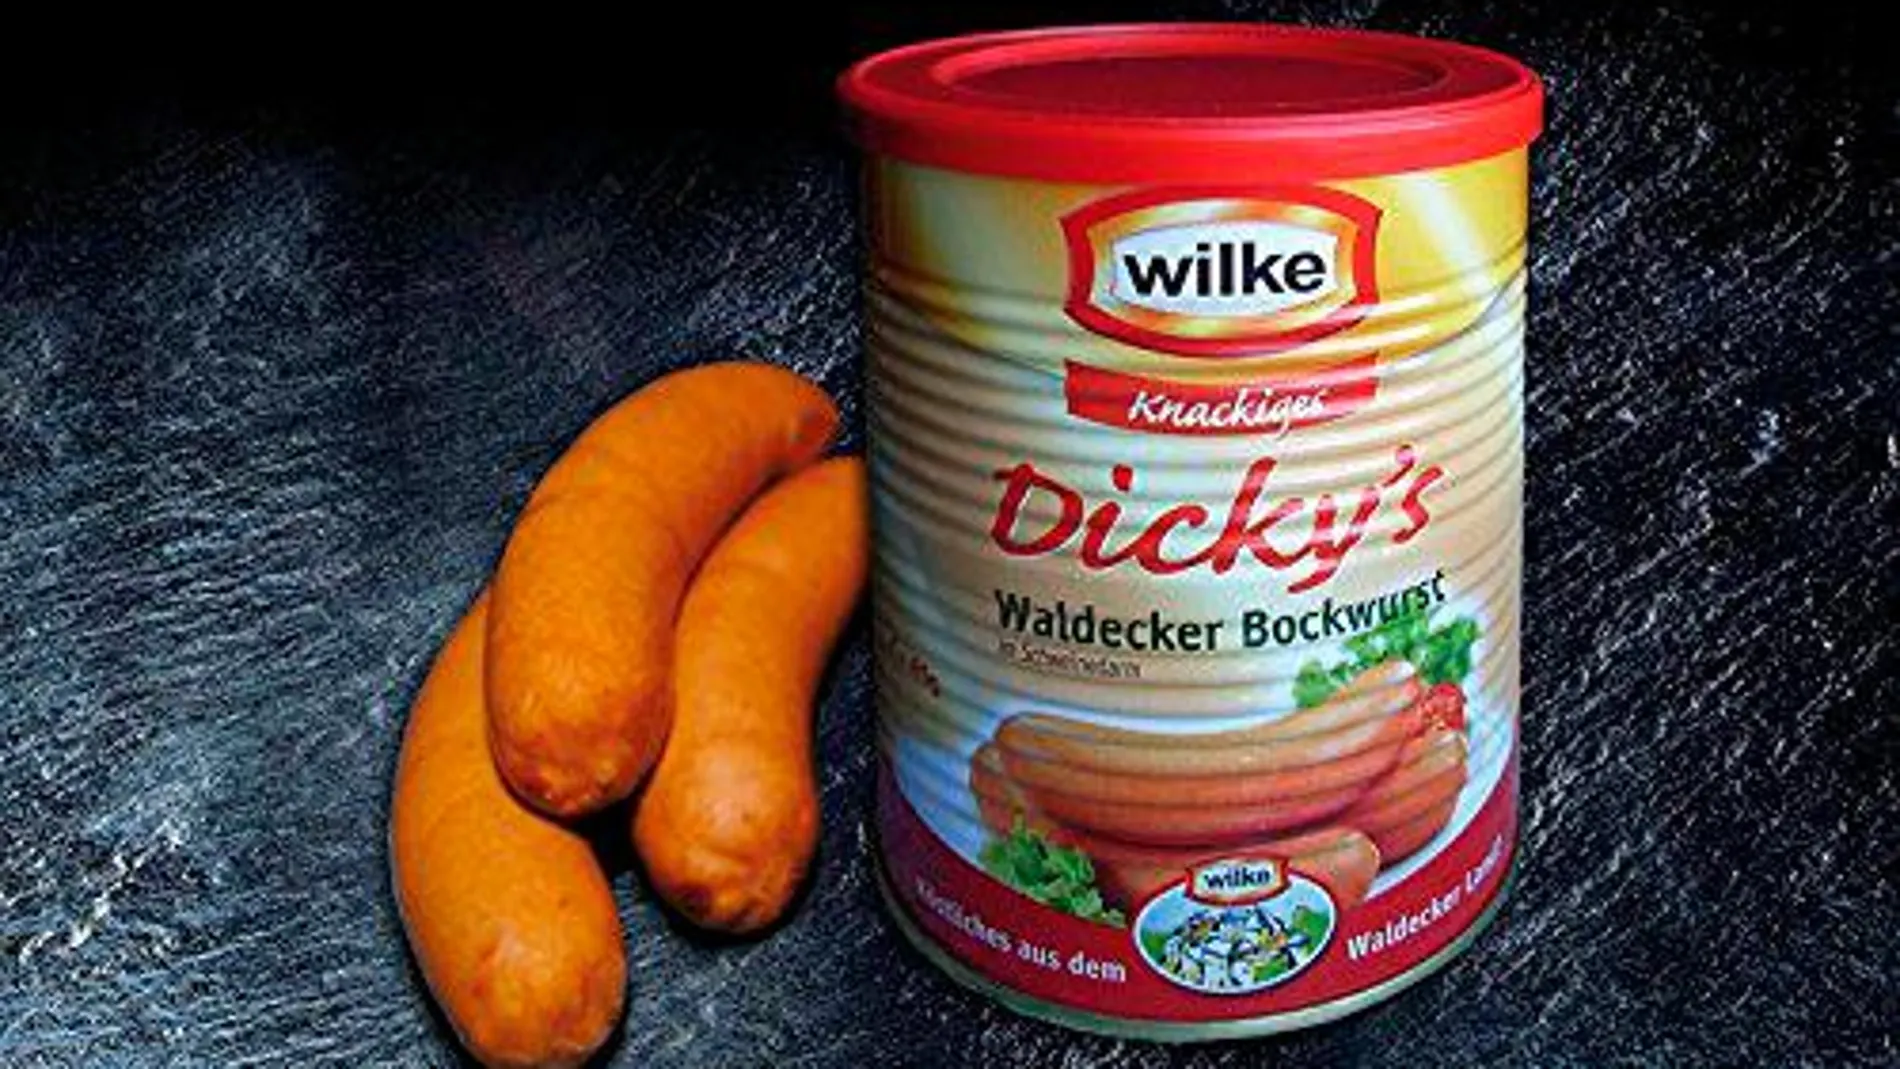 La lista de productos cárnicos de la marca Wilke incluye diferentes tipos de salchichas